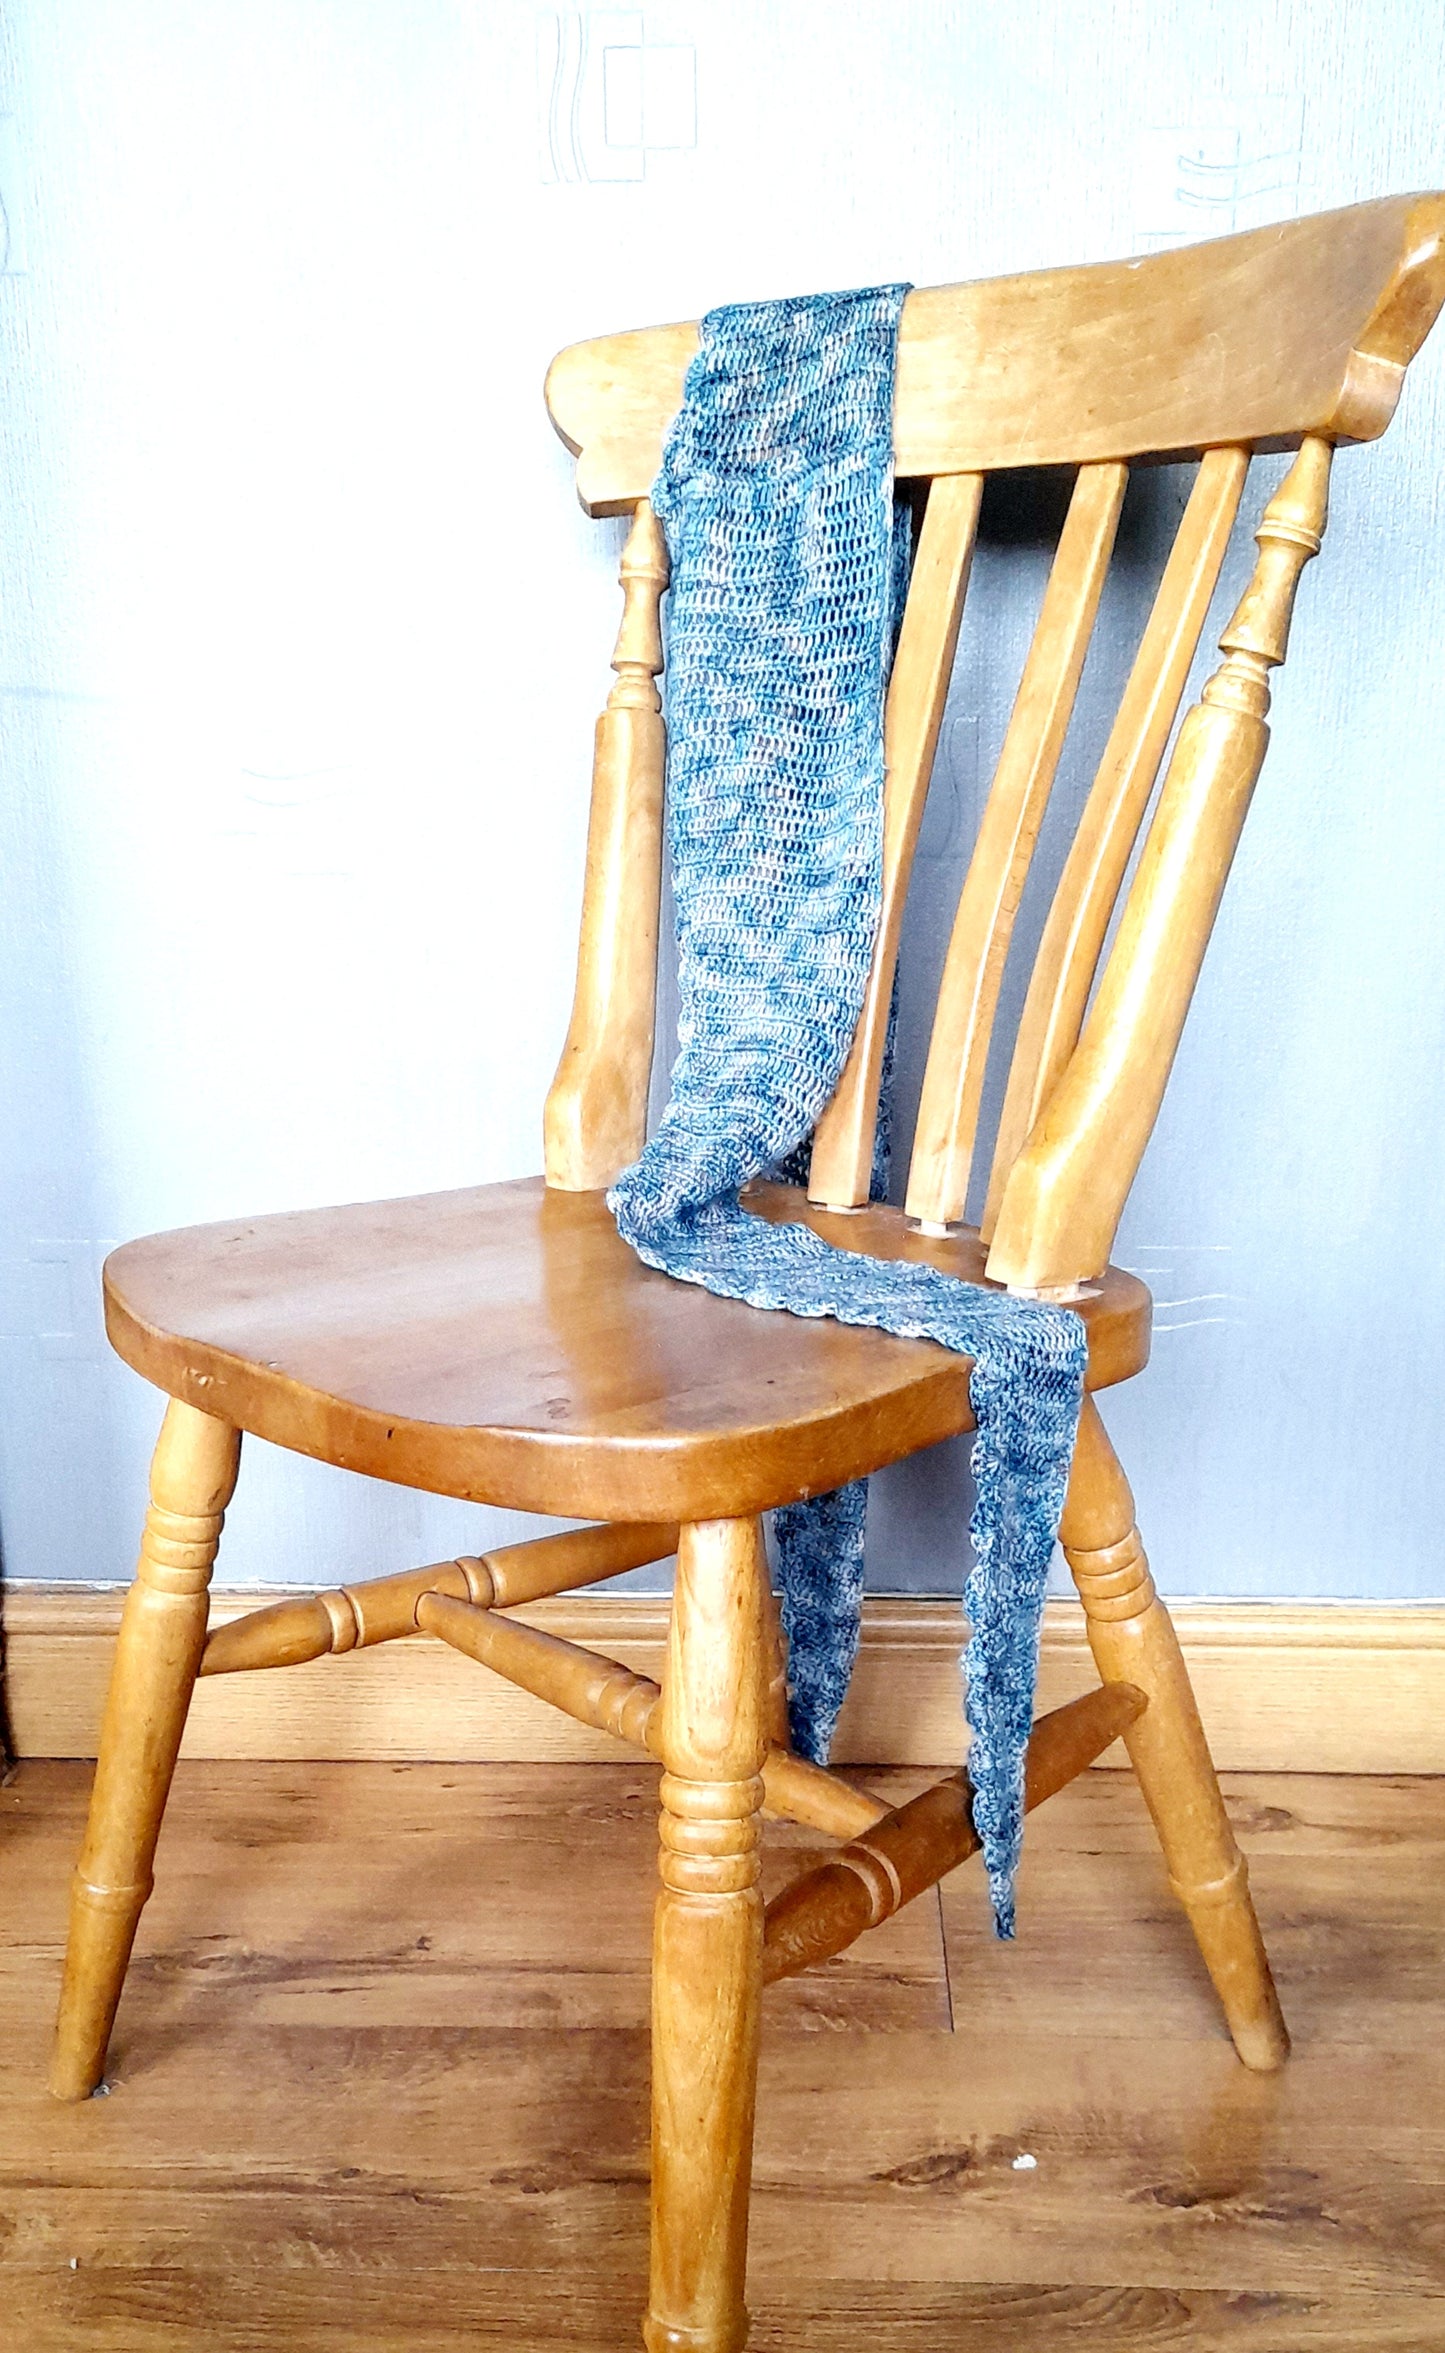 Dusturbia crochet shawl pattern. Knit 265 CAL. 